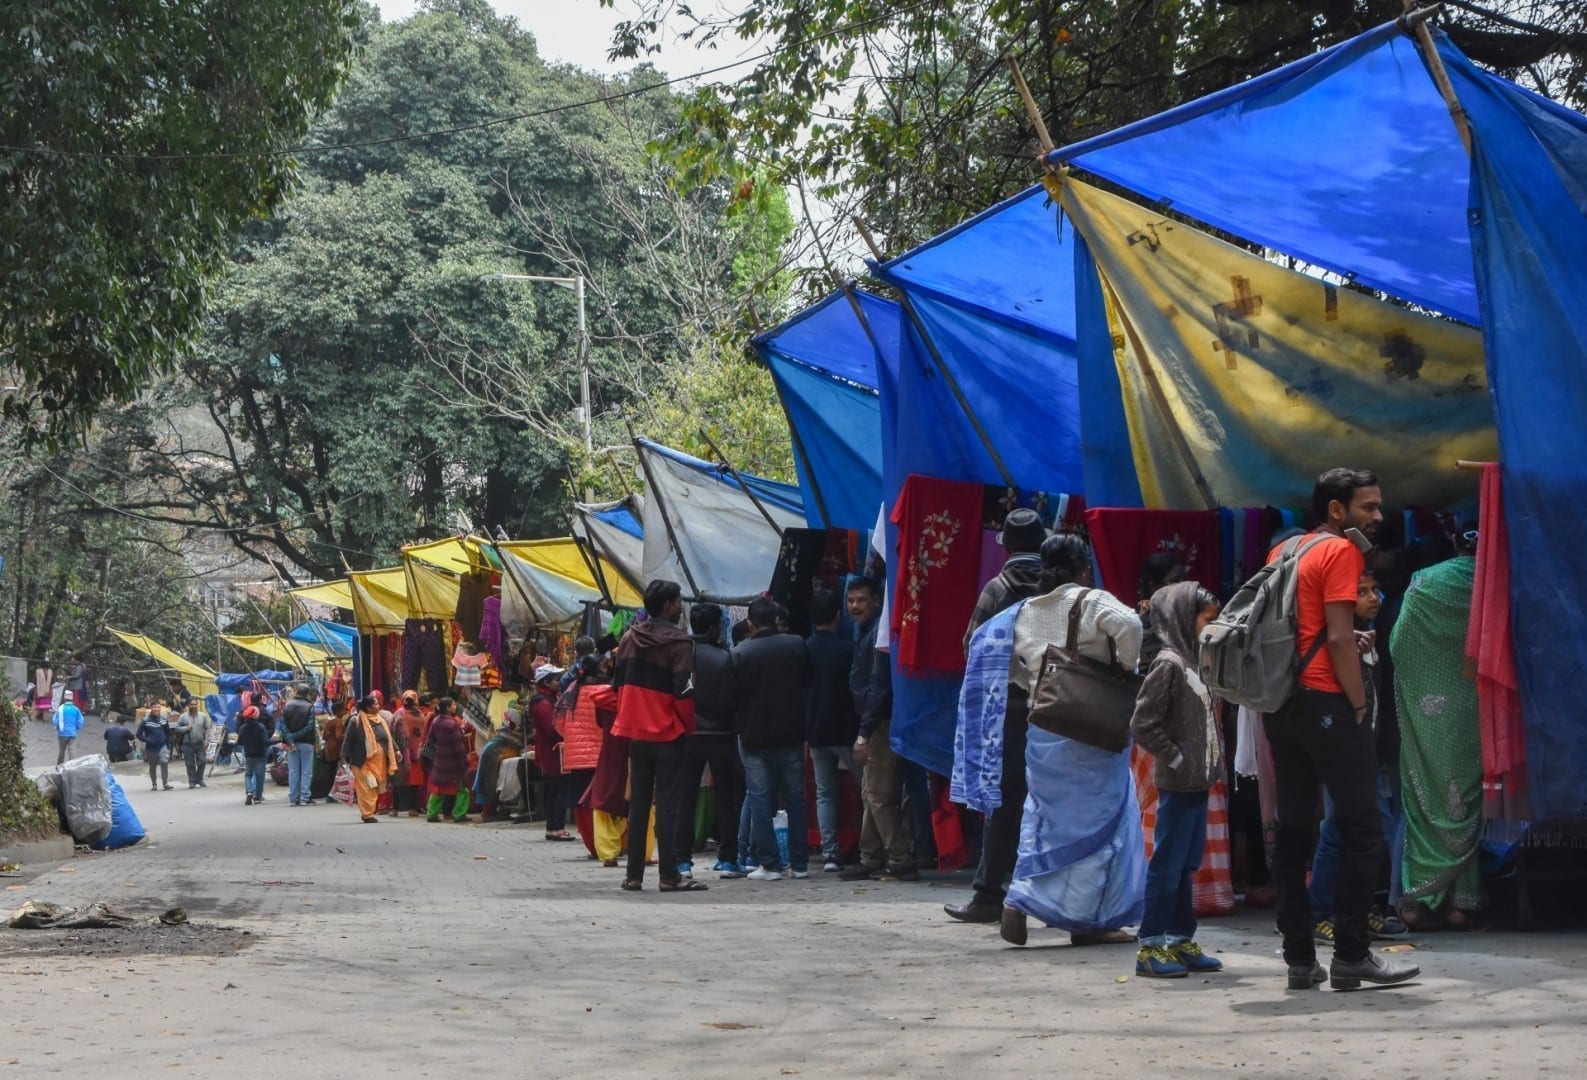 Pequeñas tiendas fuera del zoológico de Darjeeling, que ofrecen especias, té, artesanía, alimentos locales, etc. Darjeeling India